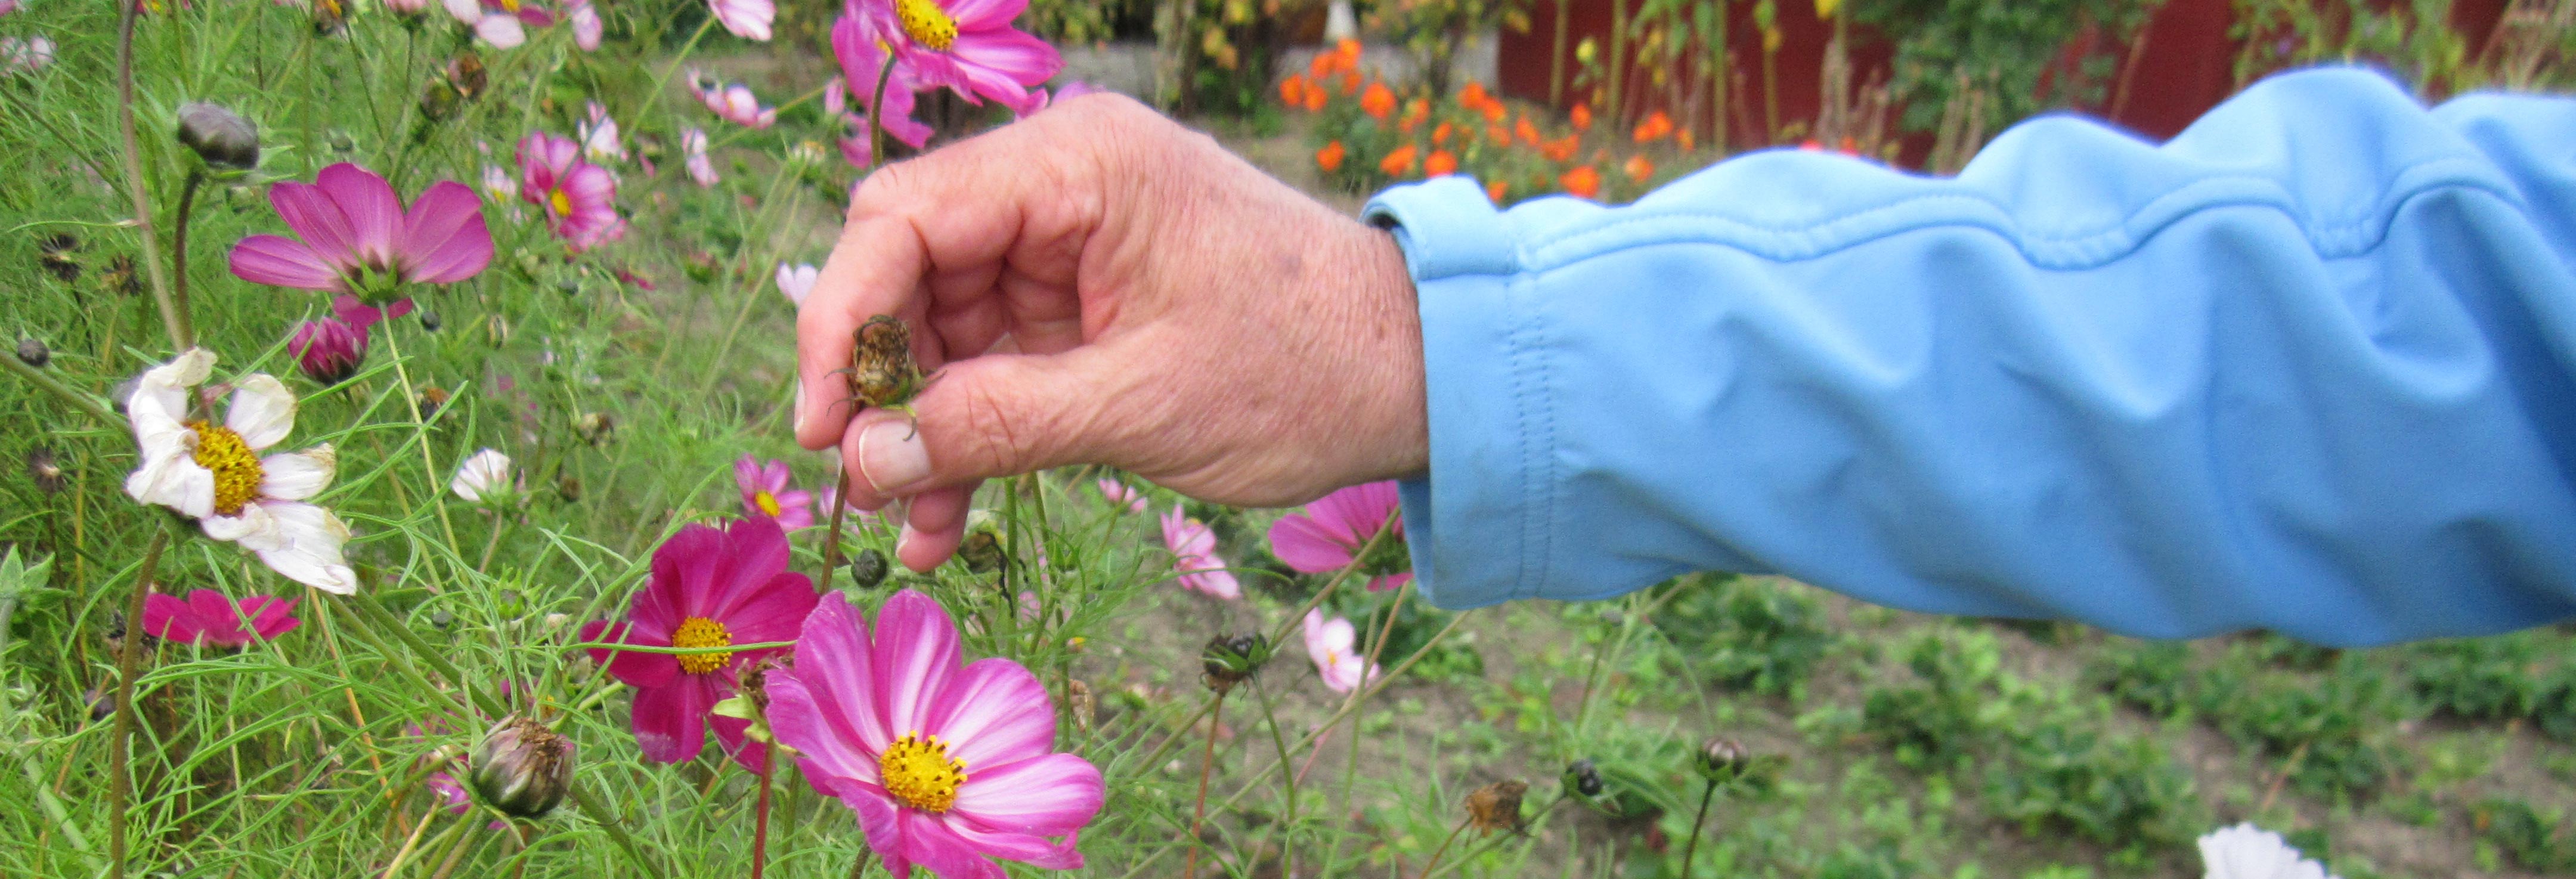 Hånd plukker lyserøde blomster